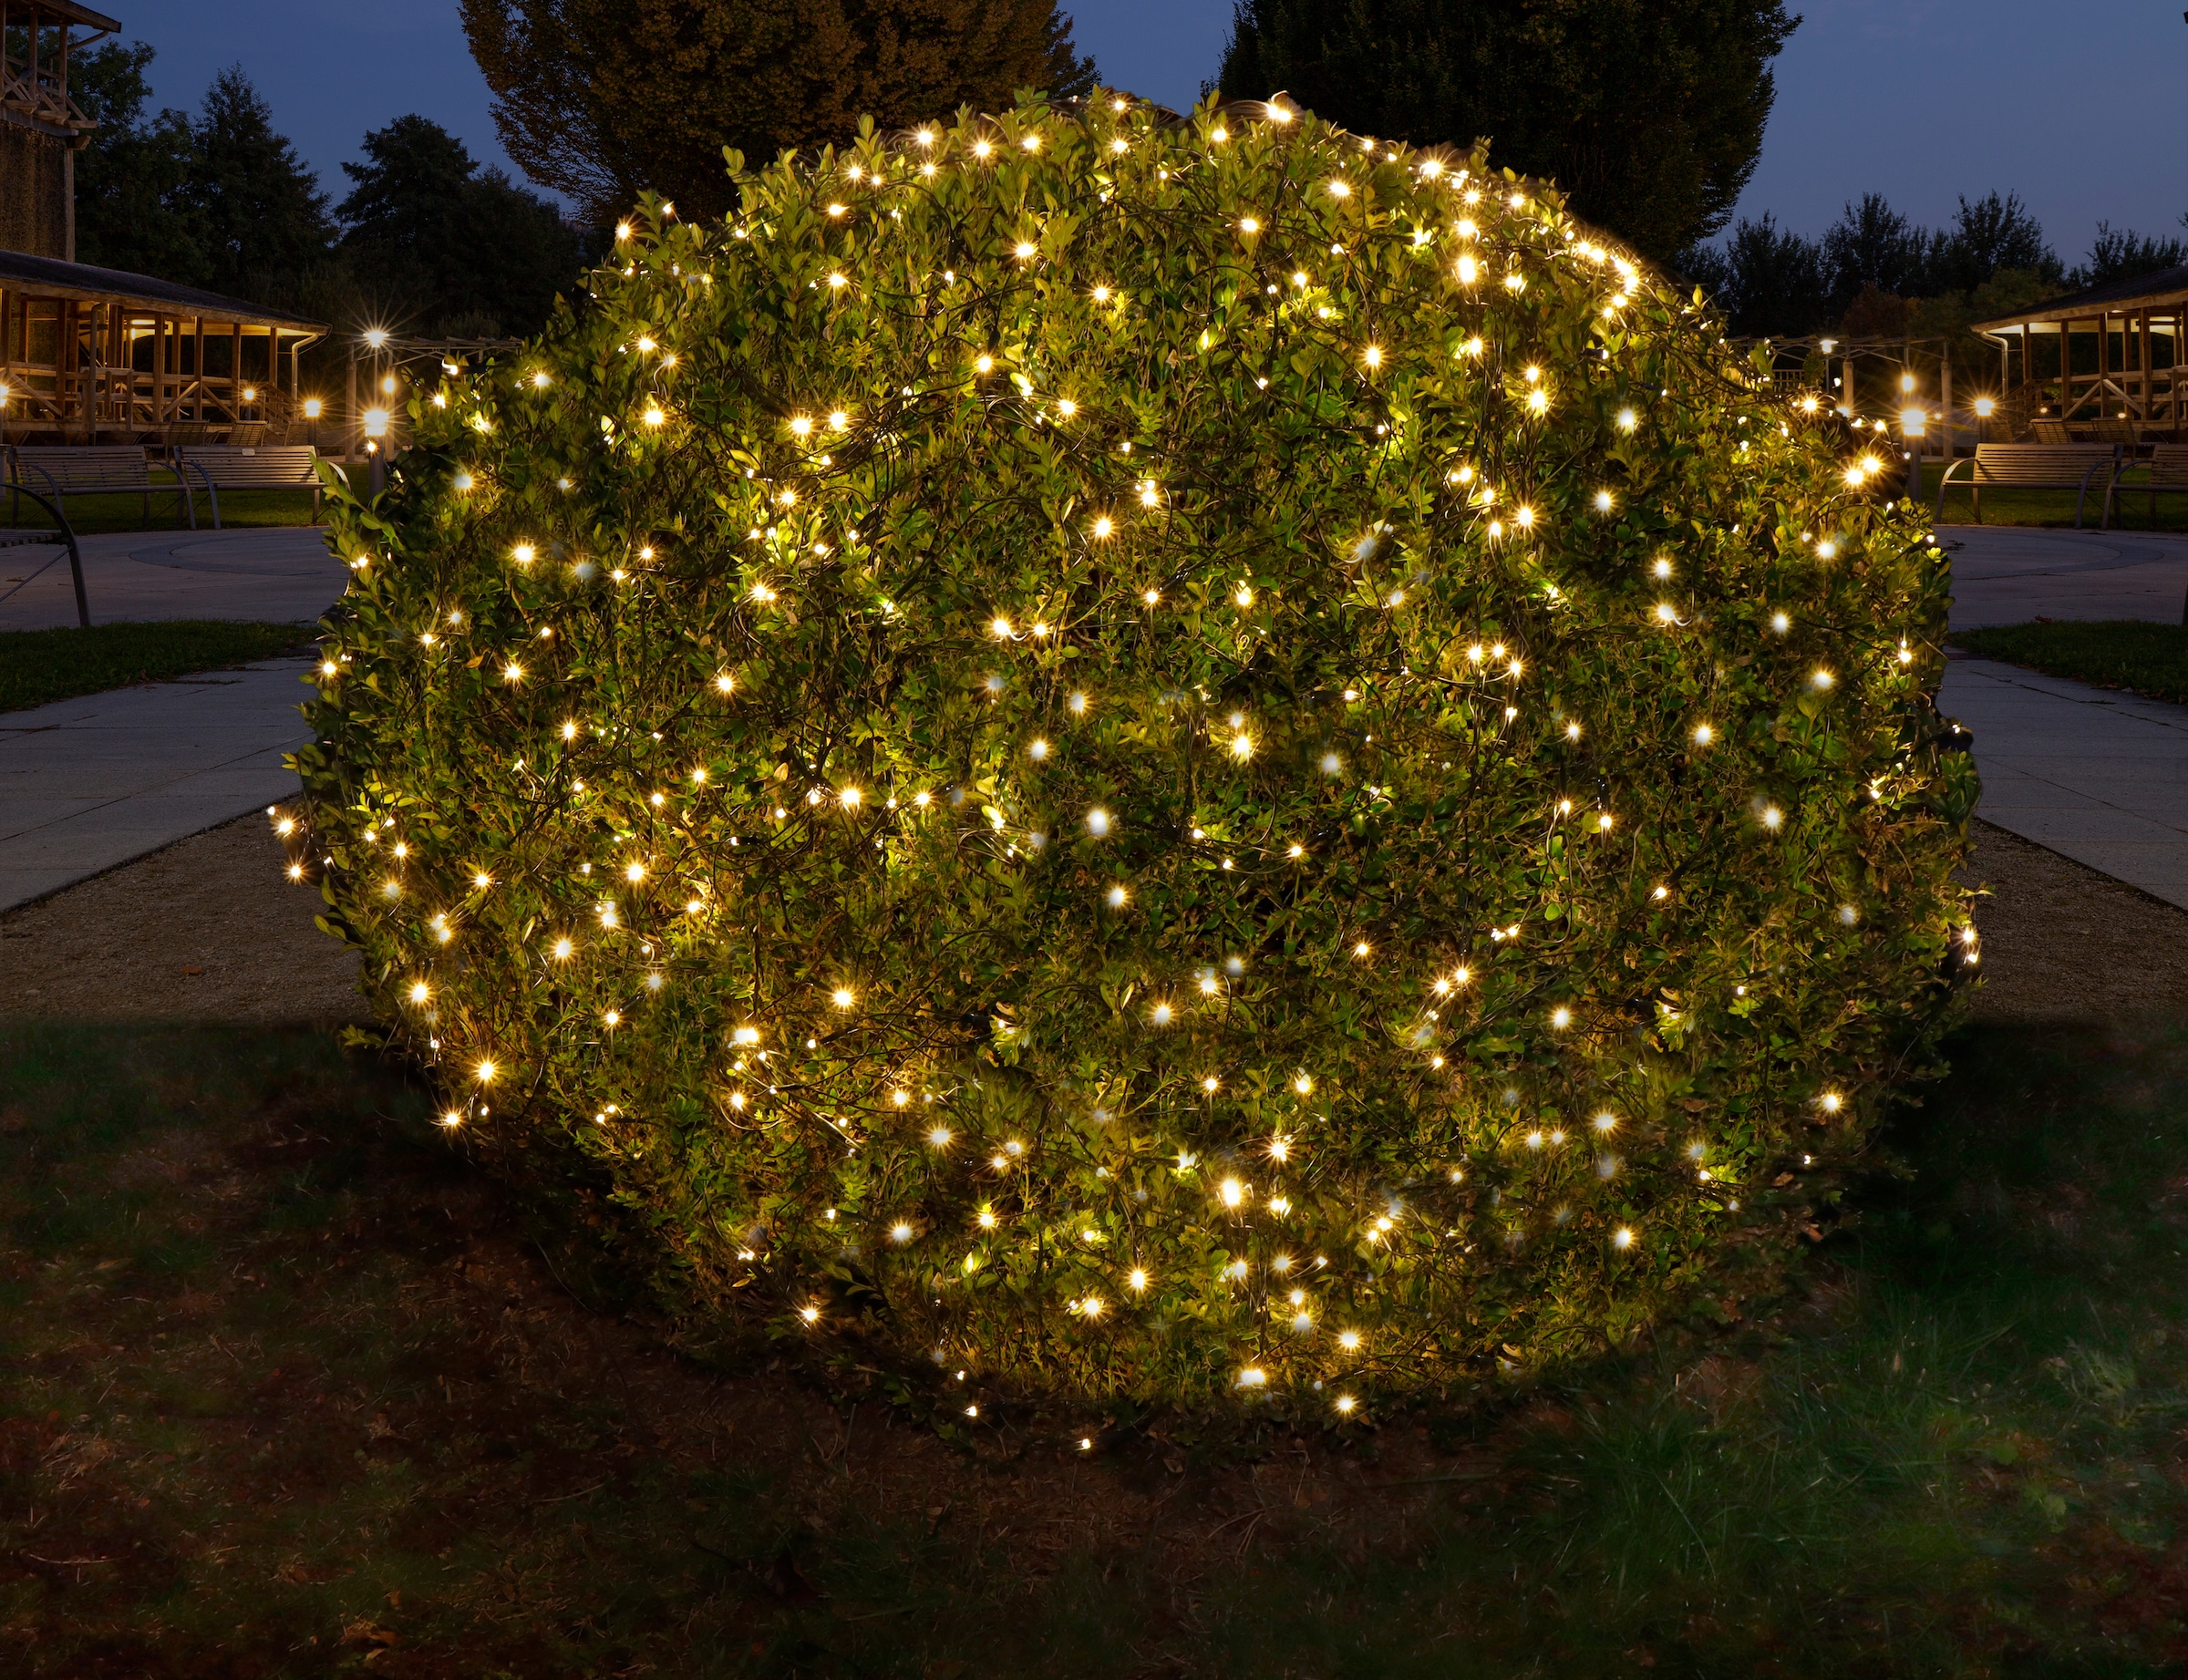 Star-Max LED-Lichternetz »Weihnachtsdeko aussen«, mit zahlreichen warmweißen LEDs, für den Außenbereich